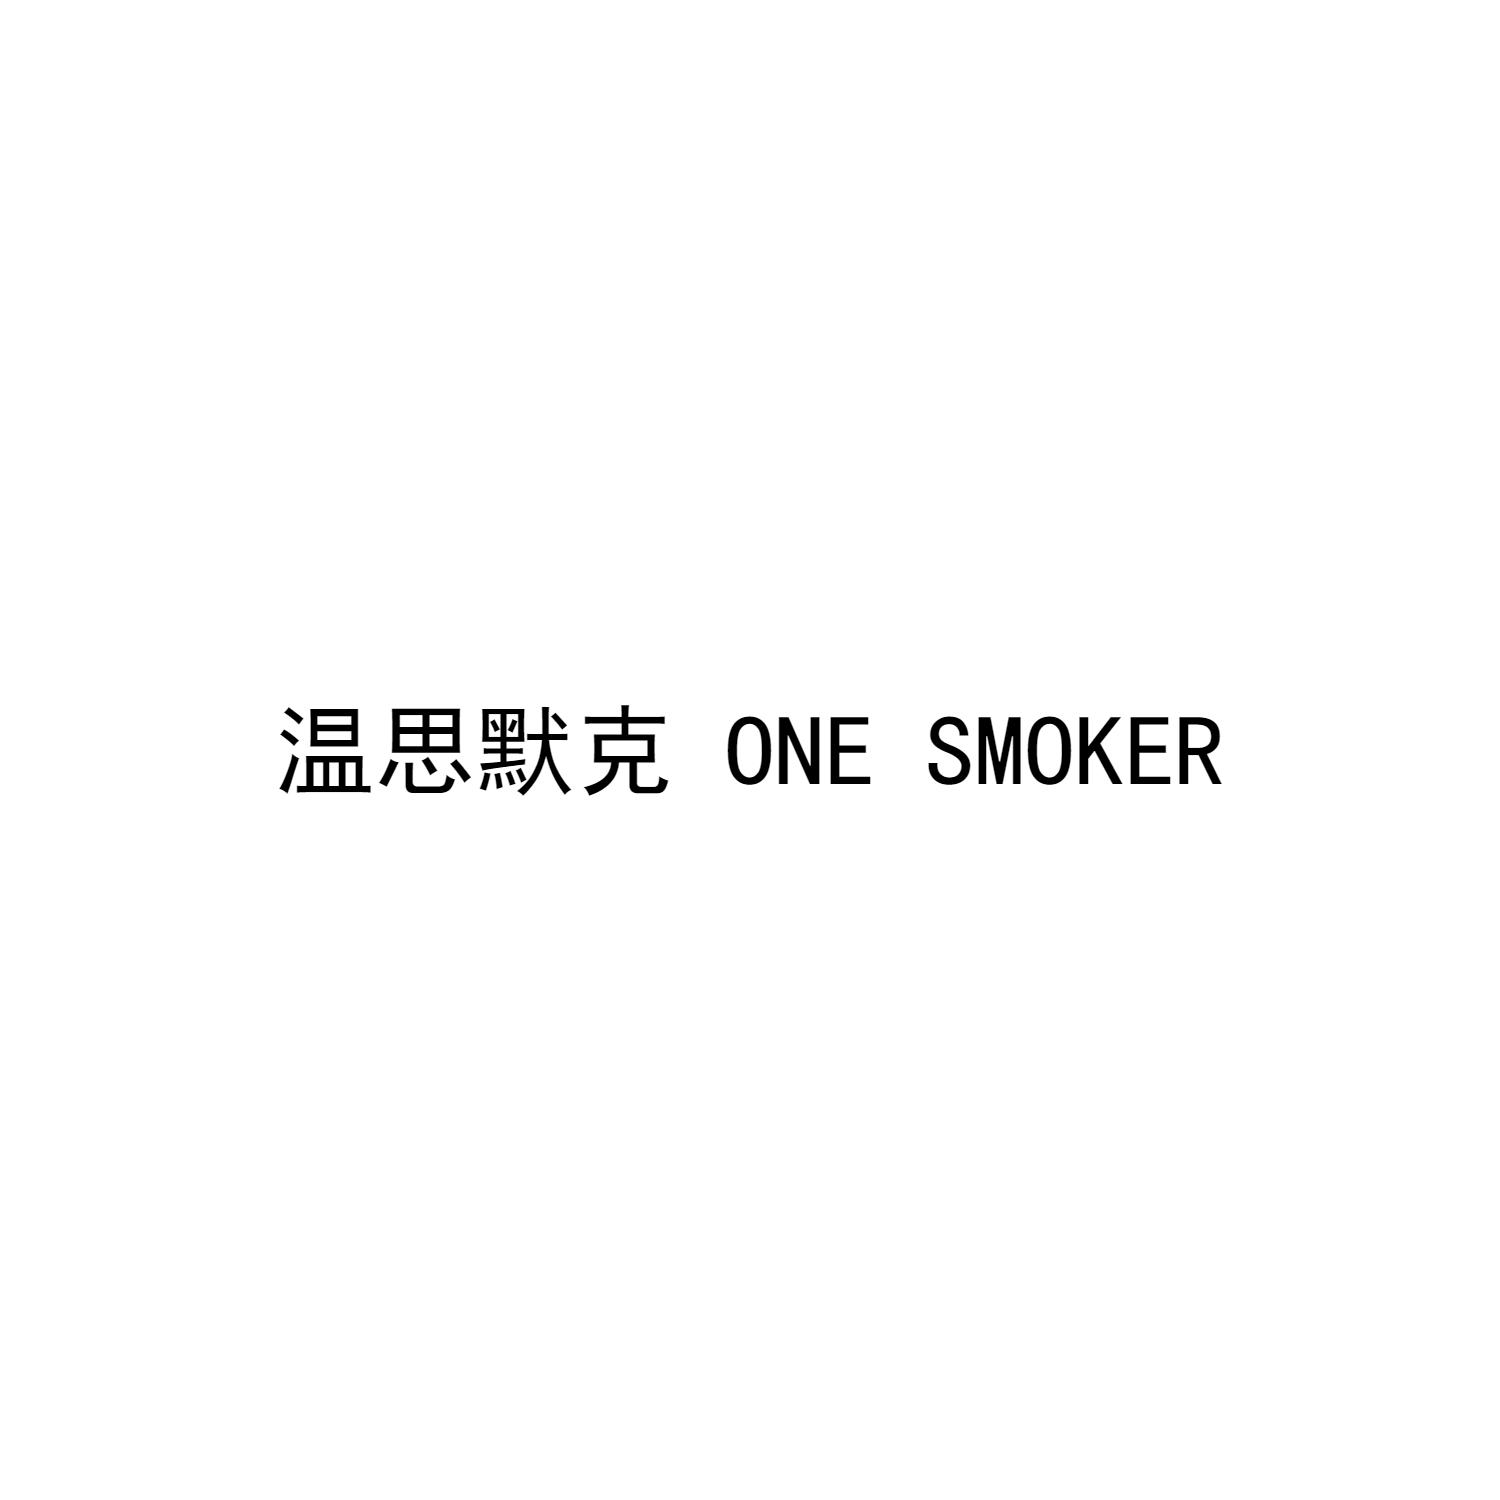 温思默克 ONE SMOKER商标转让